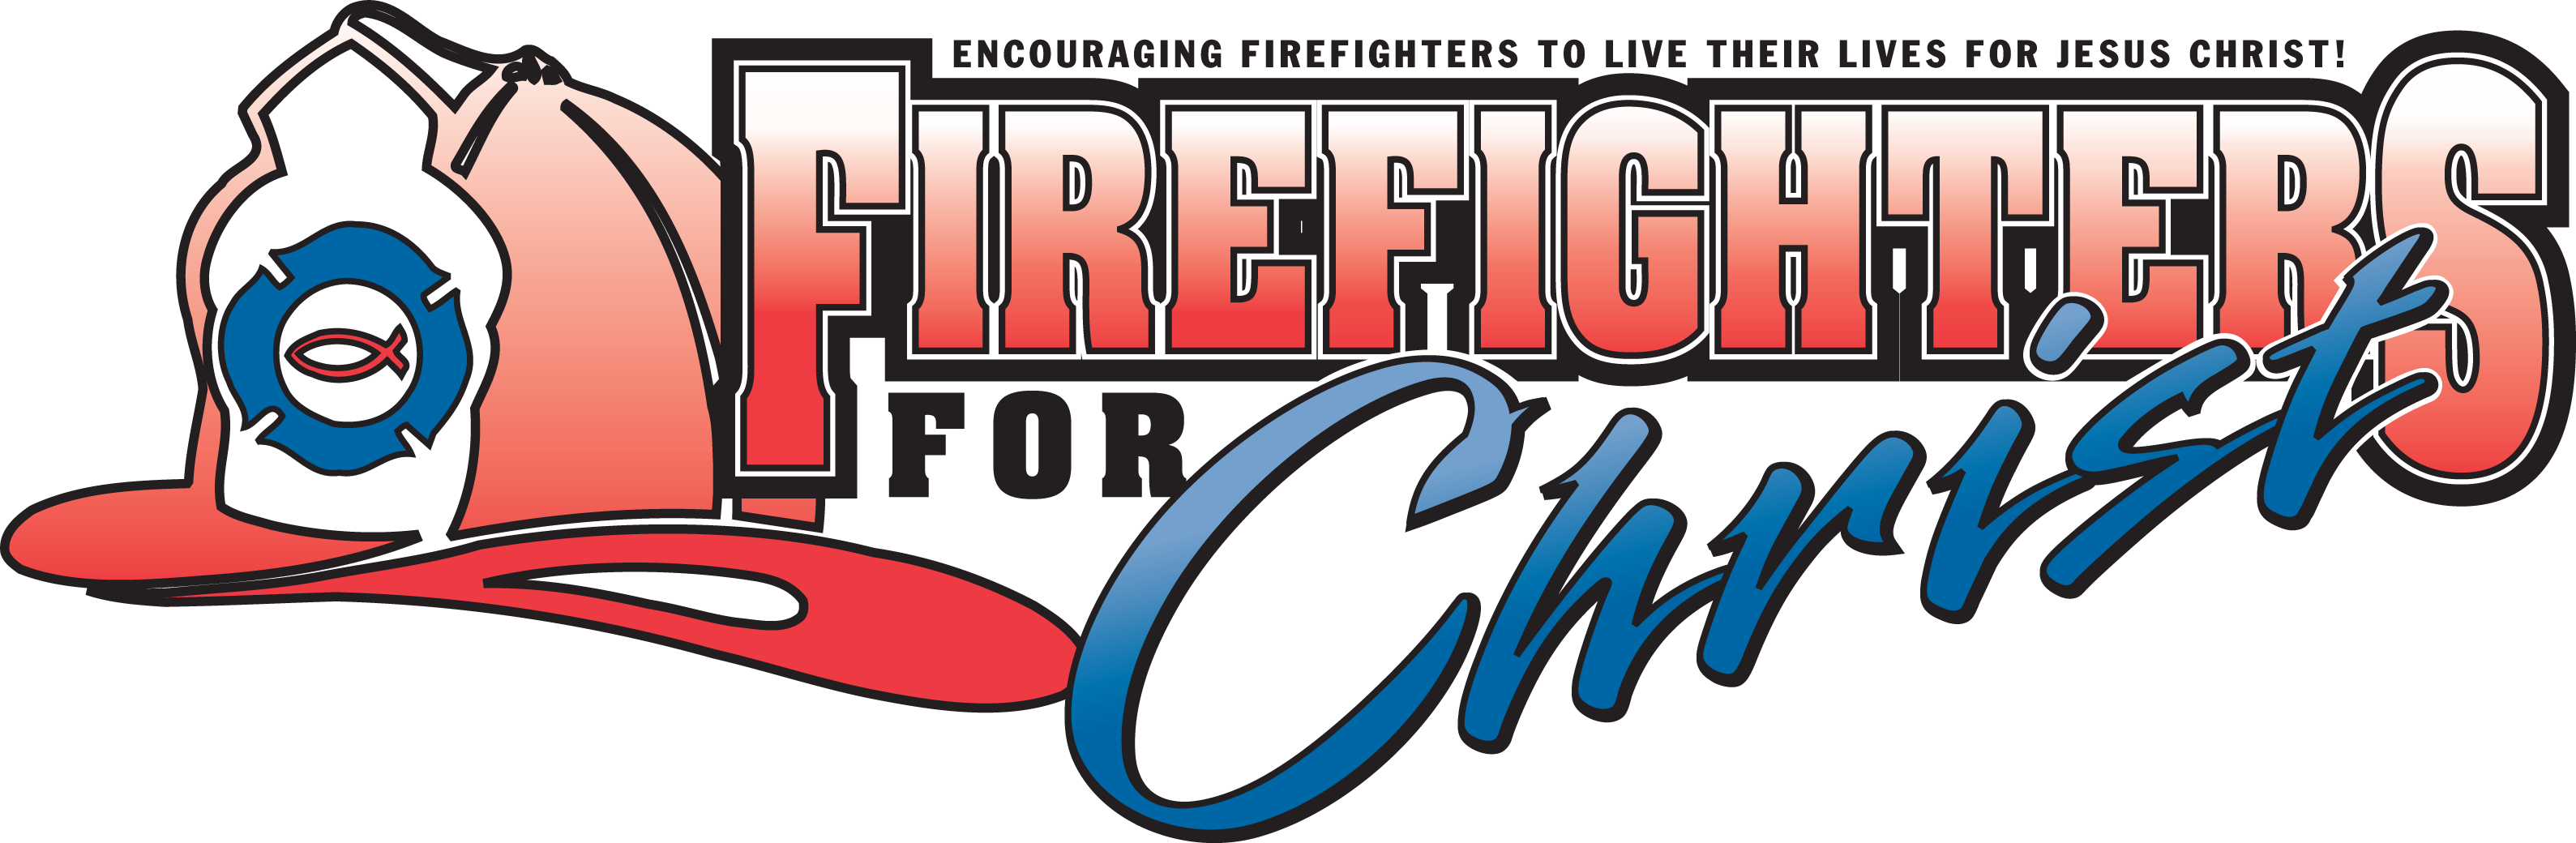 Firefighters For Christ - Firefighters For Christ (3178x1040)